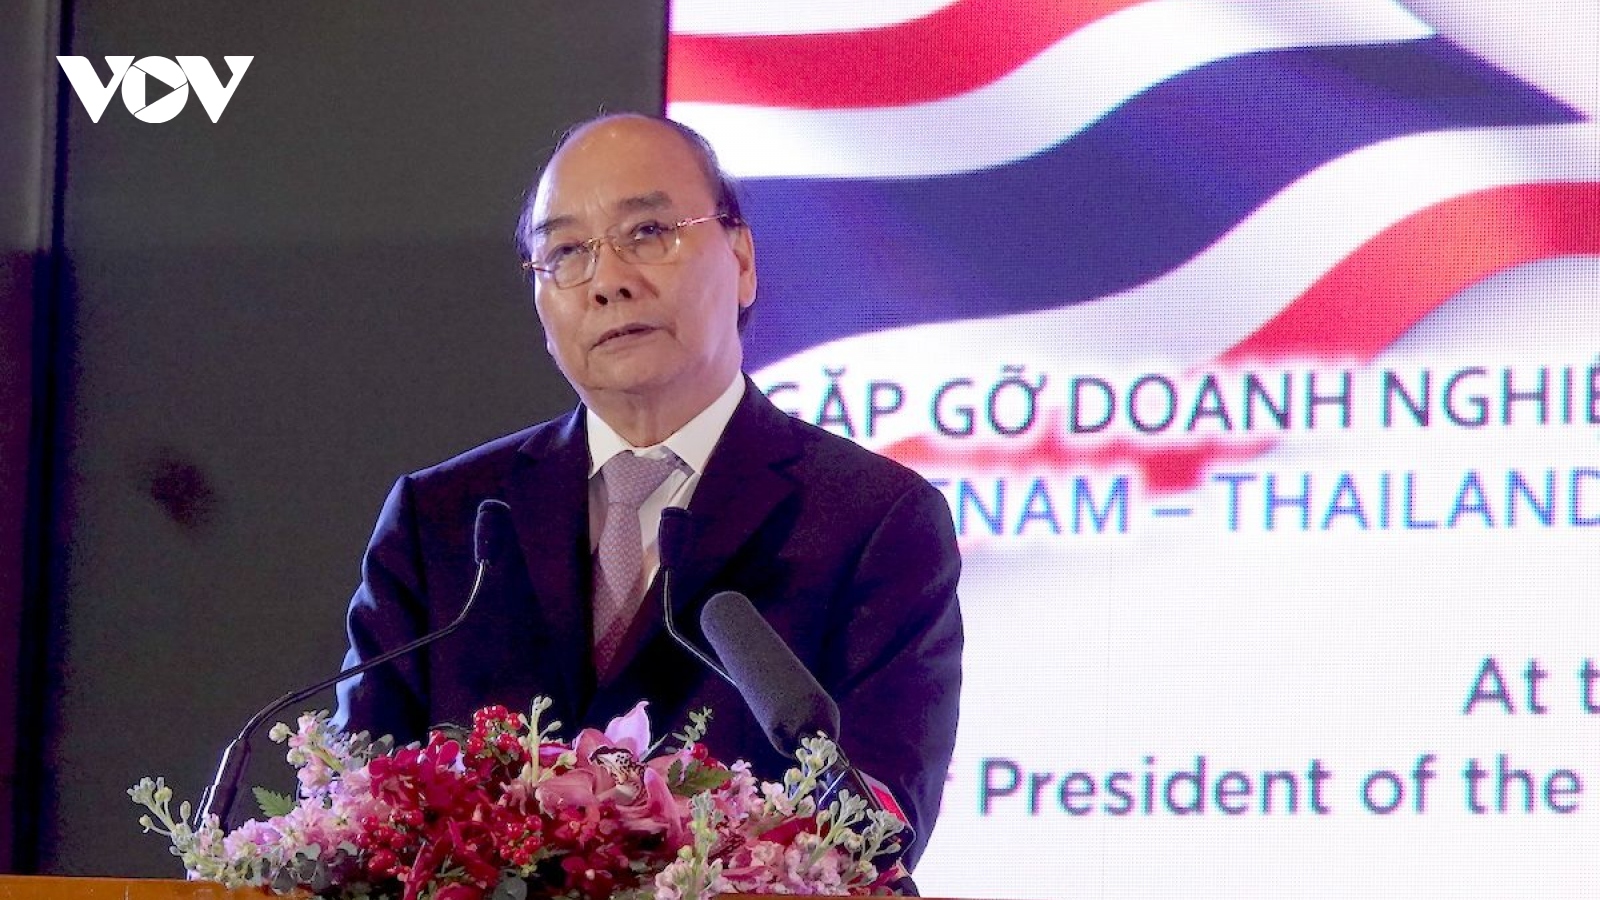 Chủ tịch nước Nguyễn Xuân Phúc dự Lễ khai trương Tuần hàng Việt Nam tại Thái Lan 2022